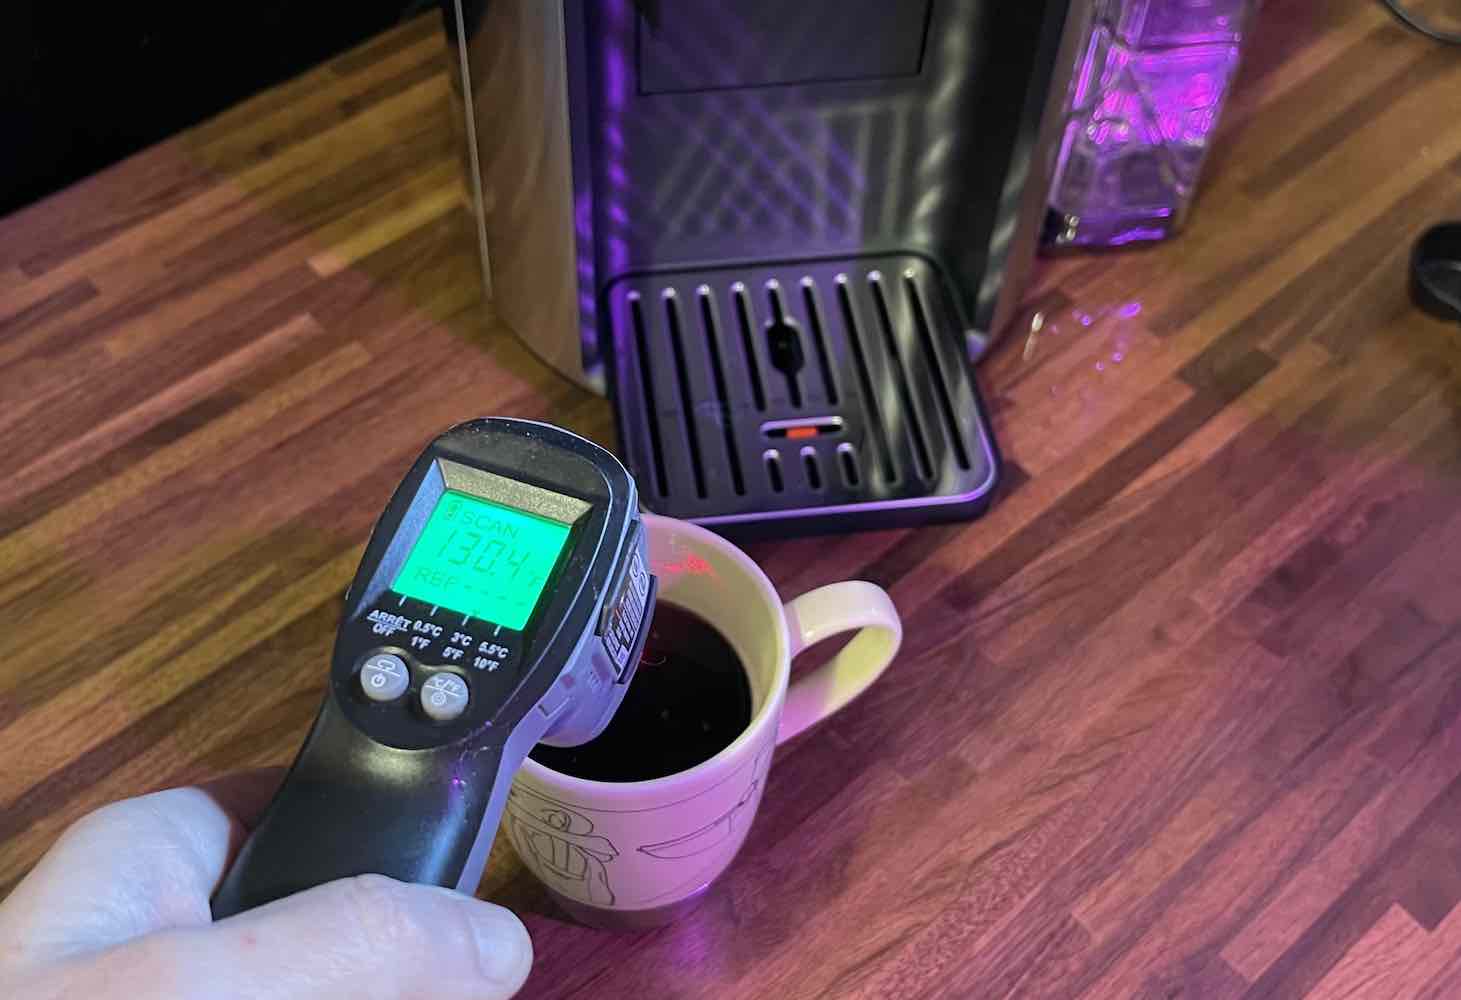 https://blog.bestbuy.ca/wp-content/uploads/2023/03/Delonghi-truebrew-coffee-maker-water-temperature.jpg